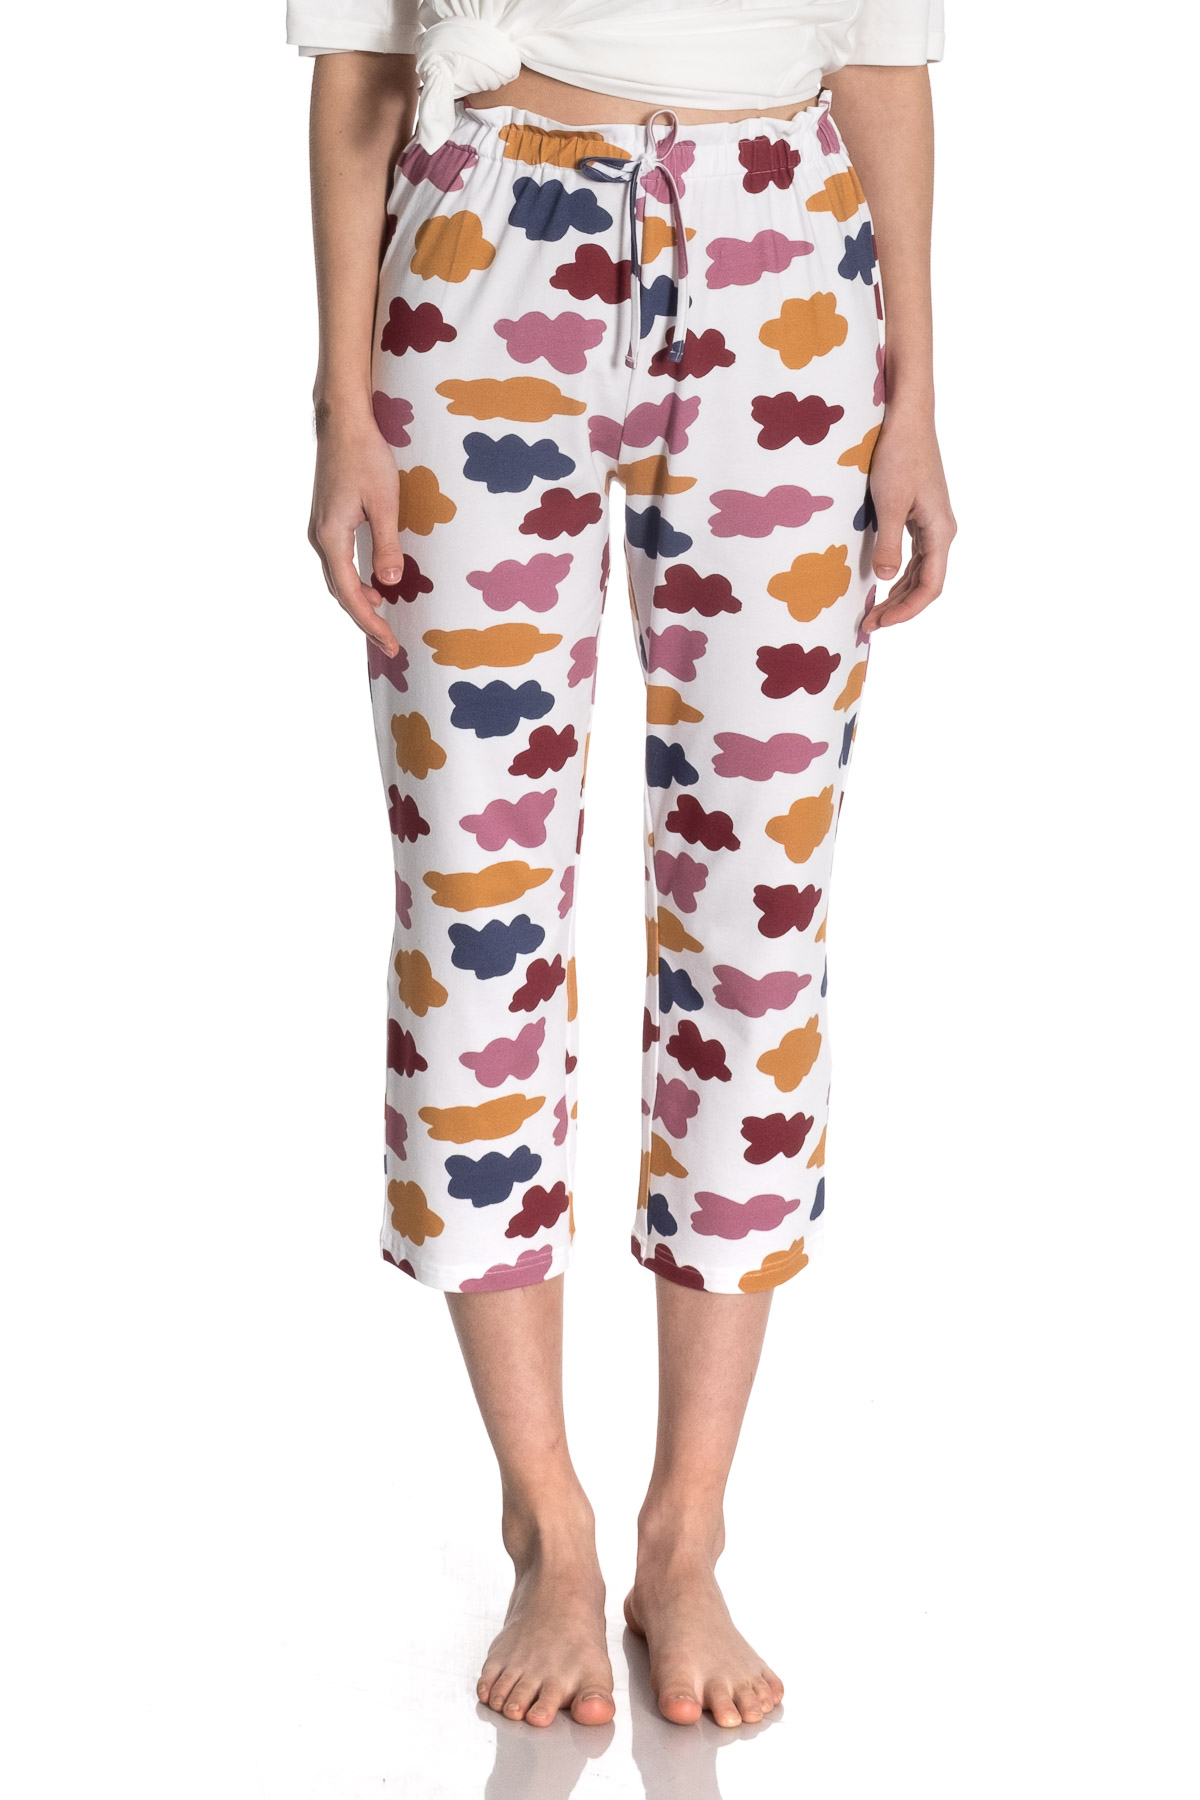 Kadın Düşük Omuzlu Üst Kapri Pijama Takımı